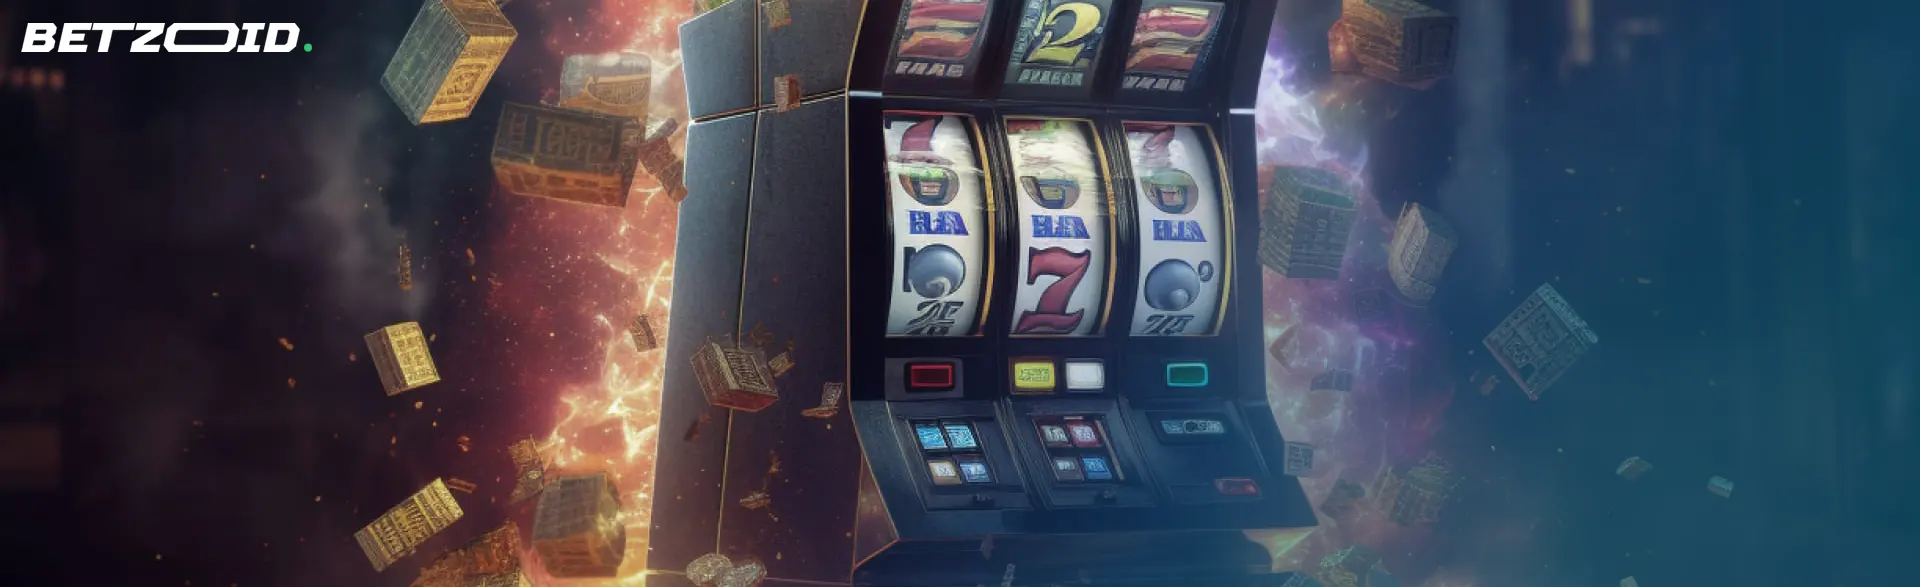 Slot machine in casinos with 400% bonus.